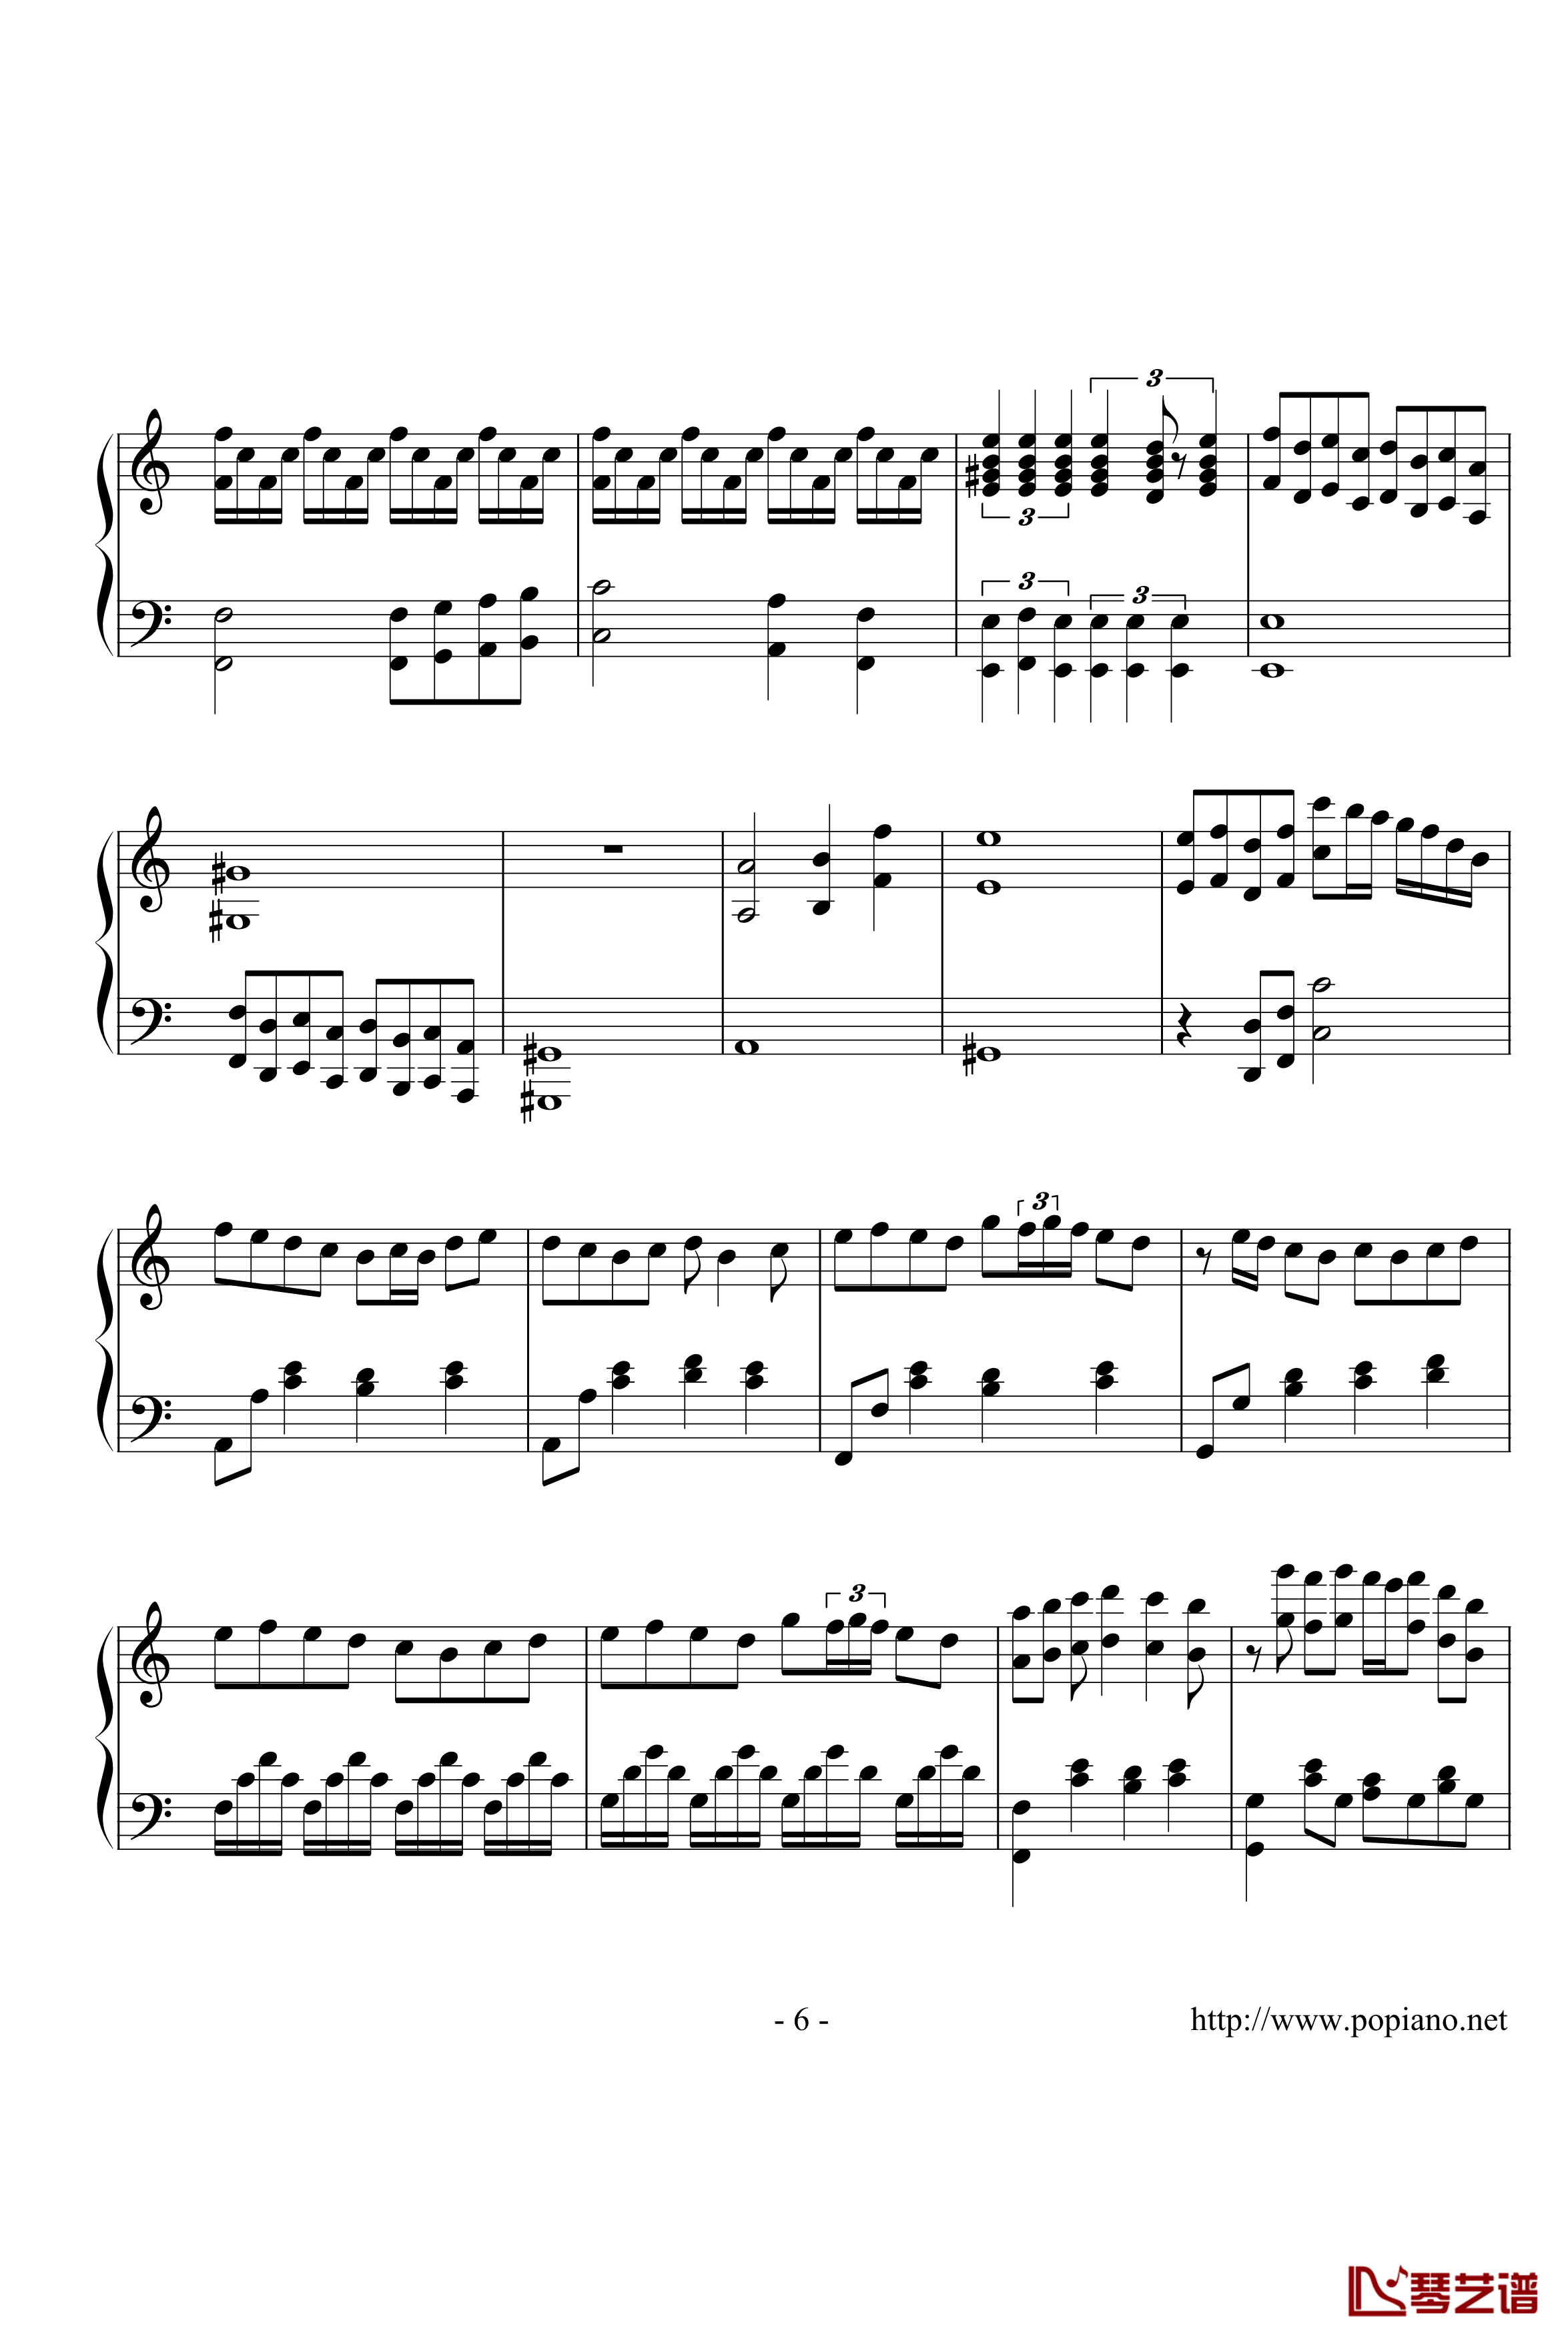 亡灵钢琴钢琴谱-完整版-长腿叔叔6